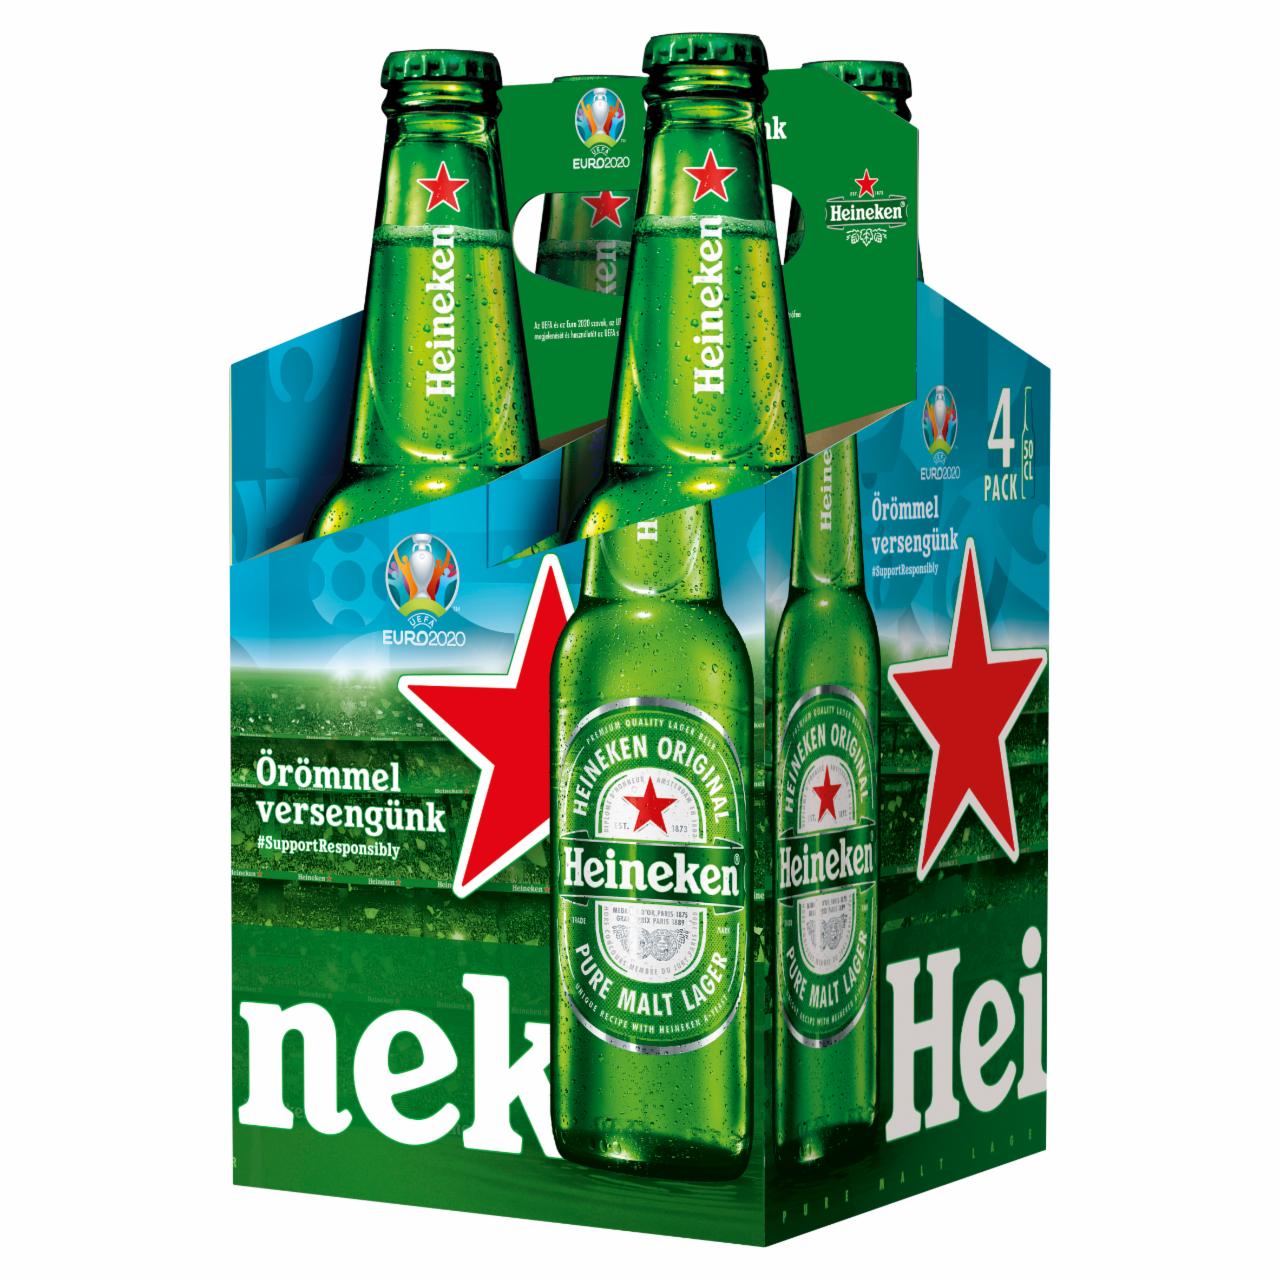 Képek - Heineken minőségi világos sör 5% 4 x 0,5 l üveg